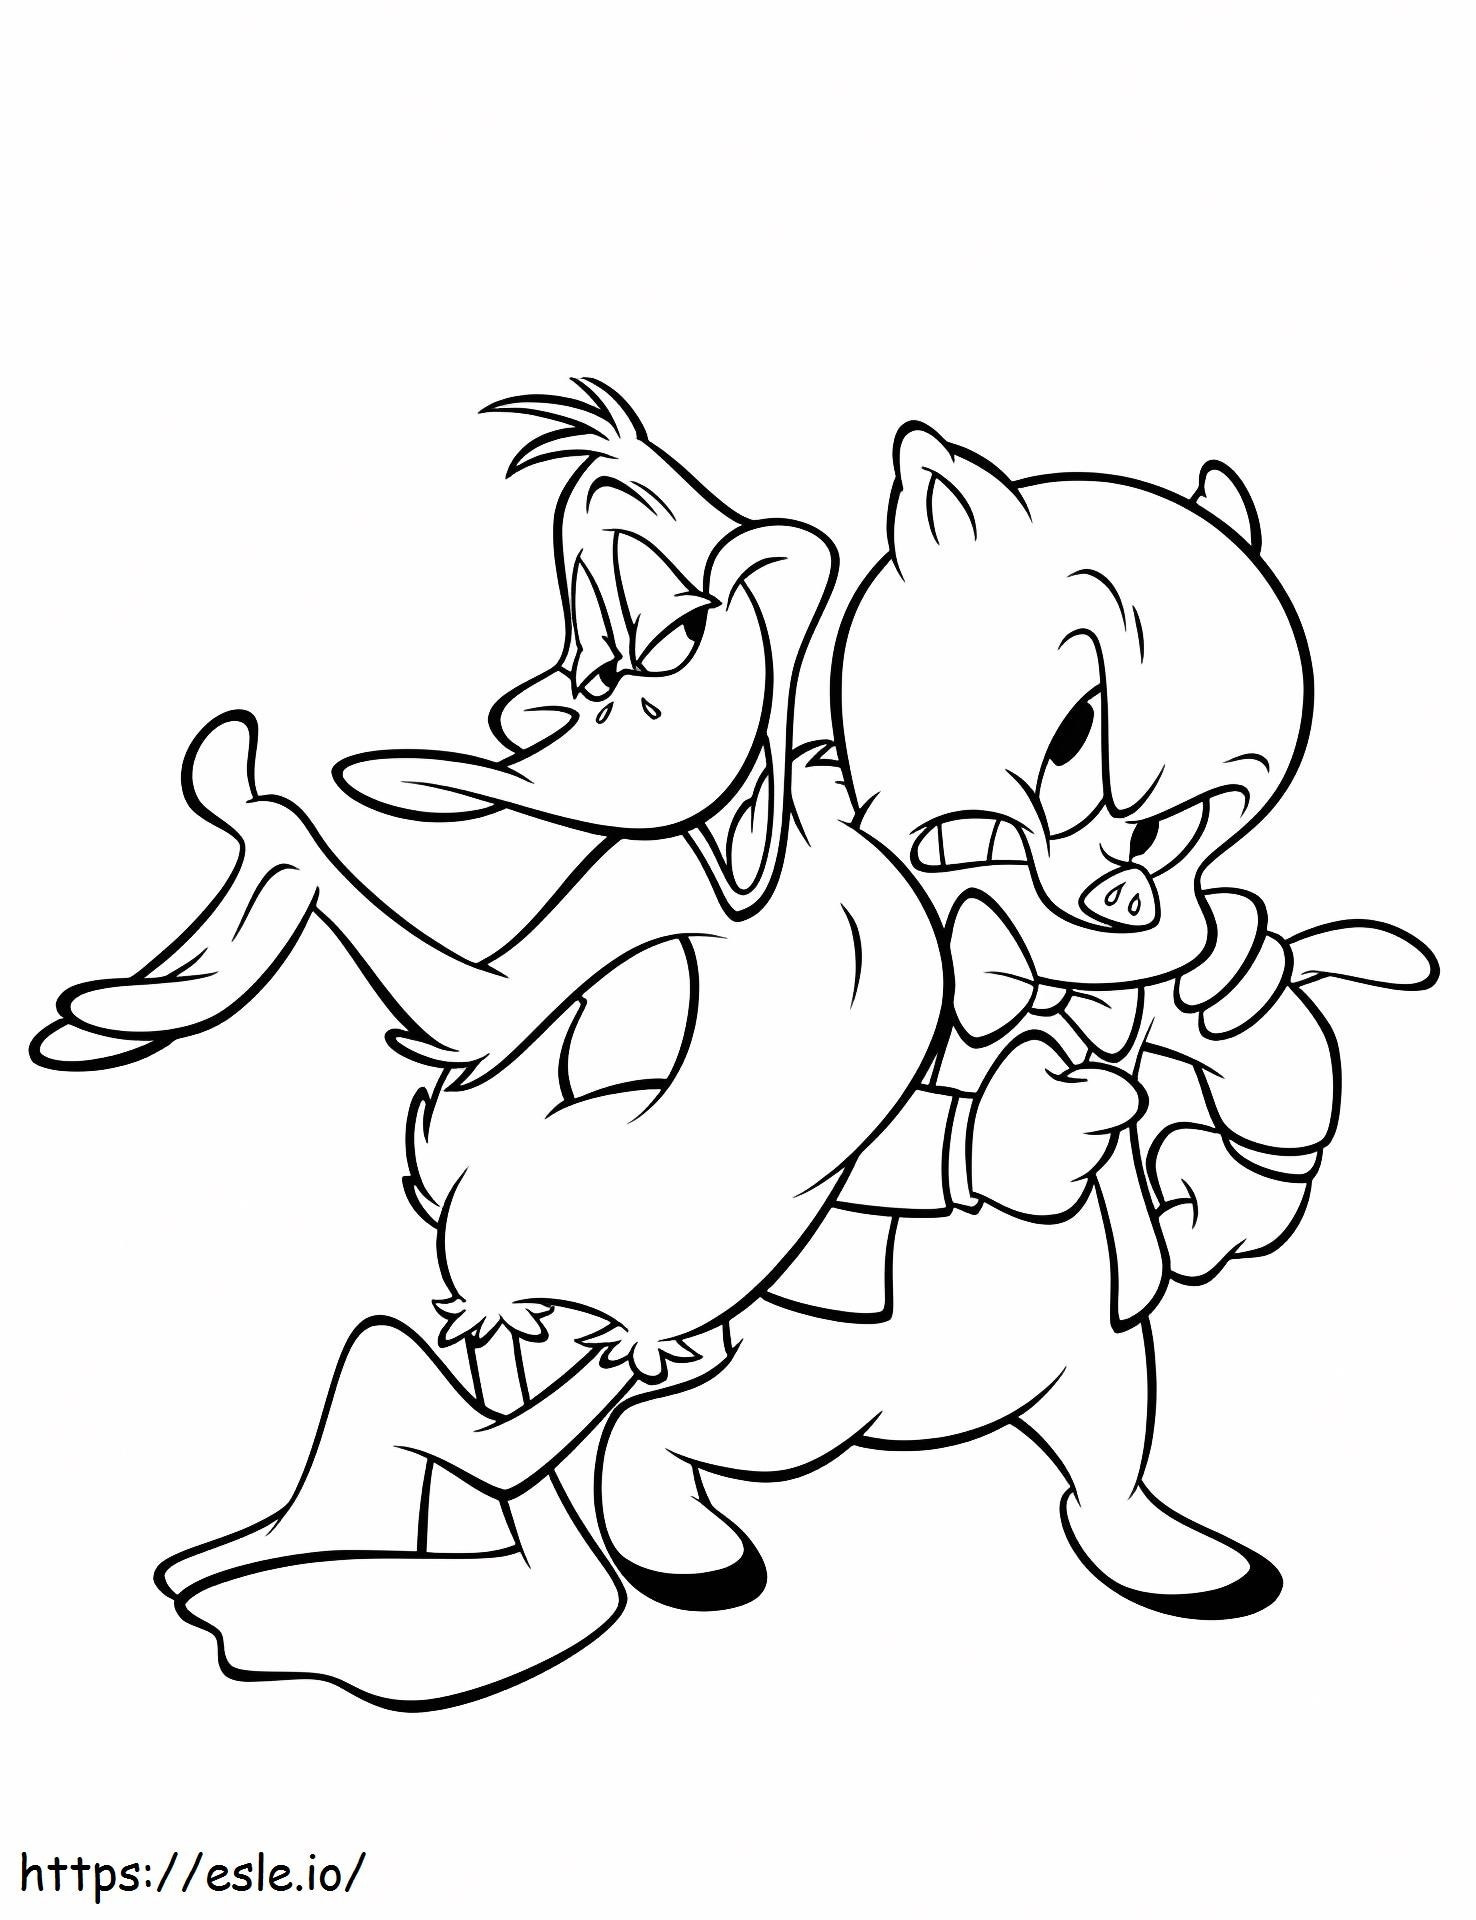 Coloriage  Duffy Duck et Porky Pig A4 à imprimer dessin